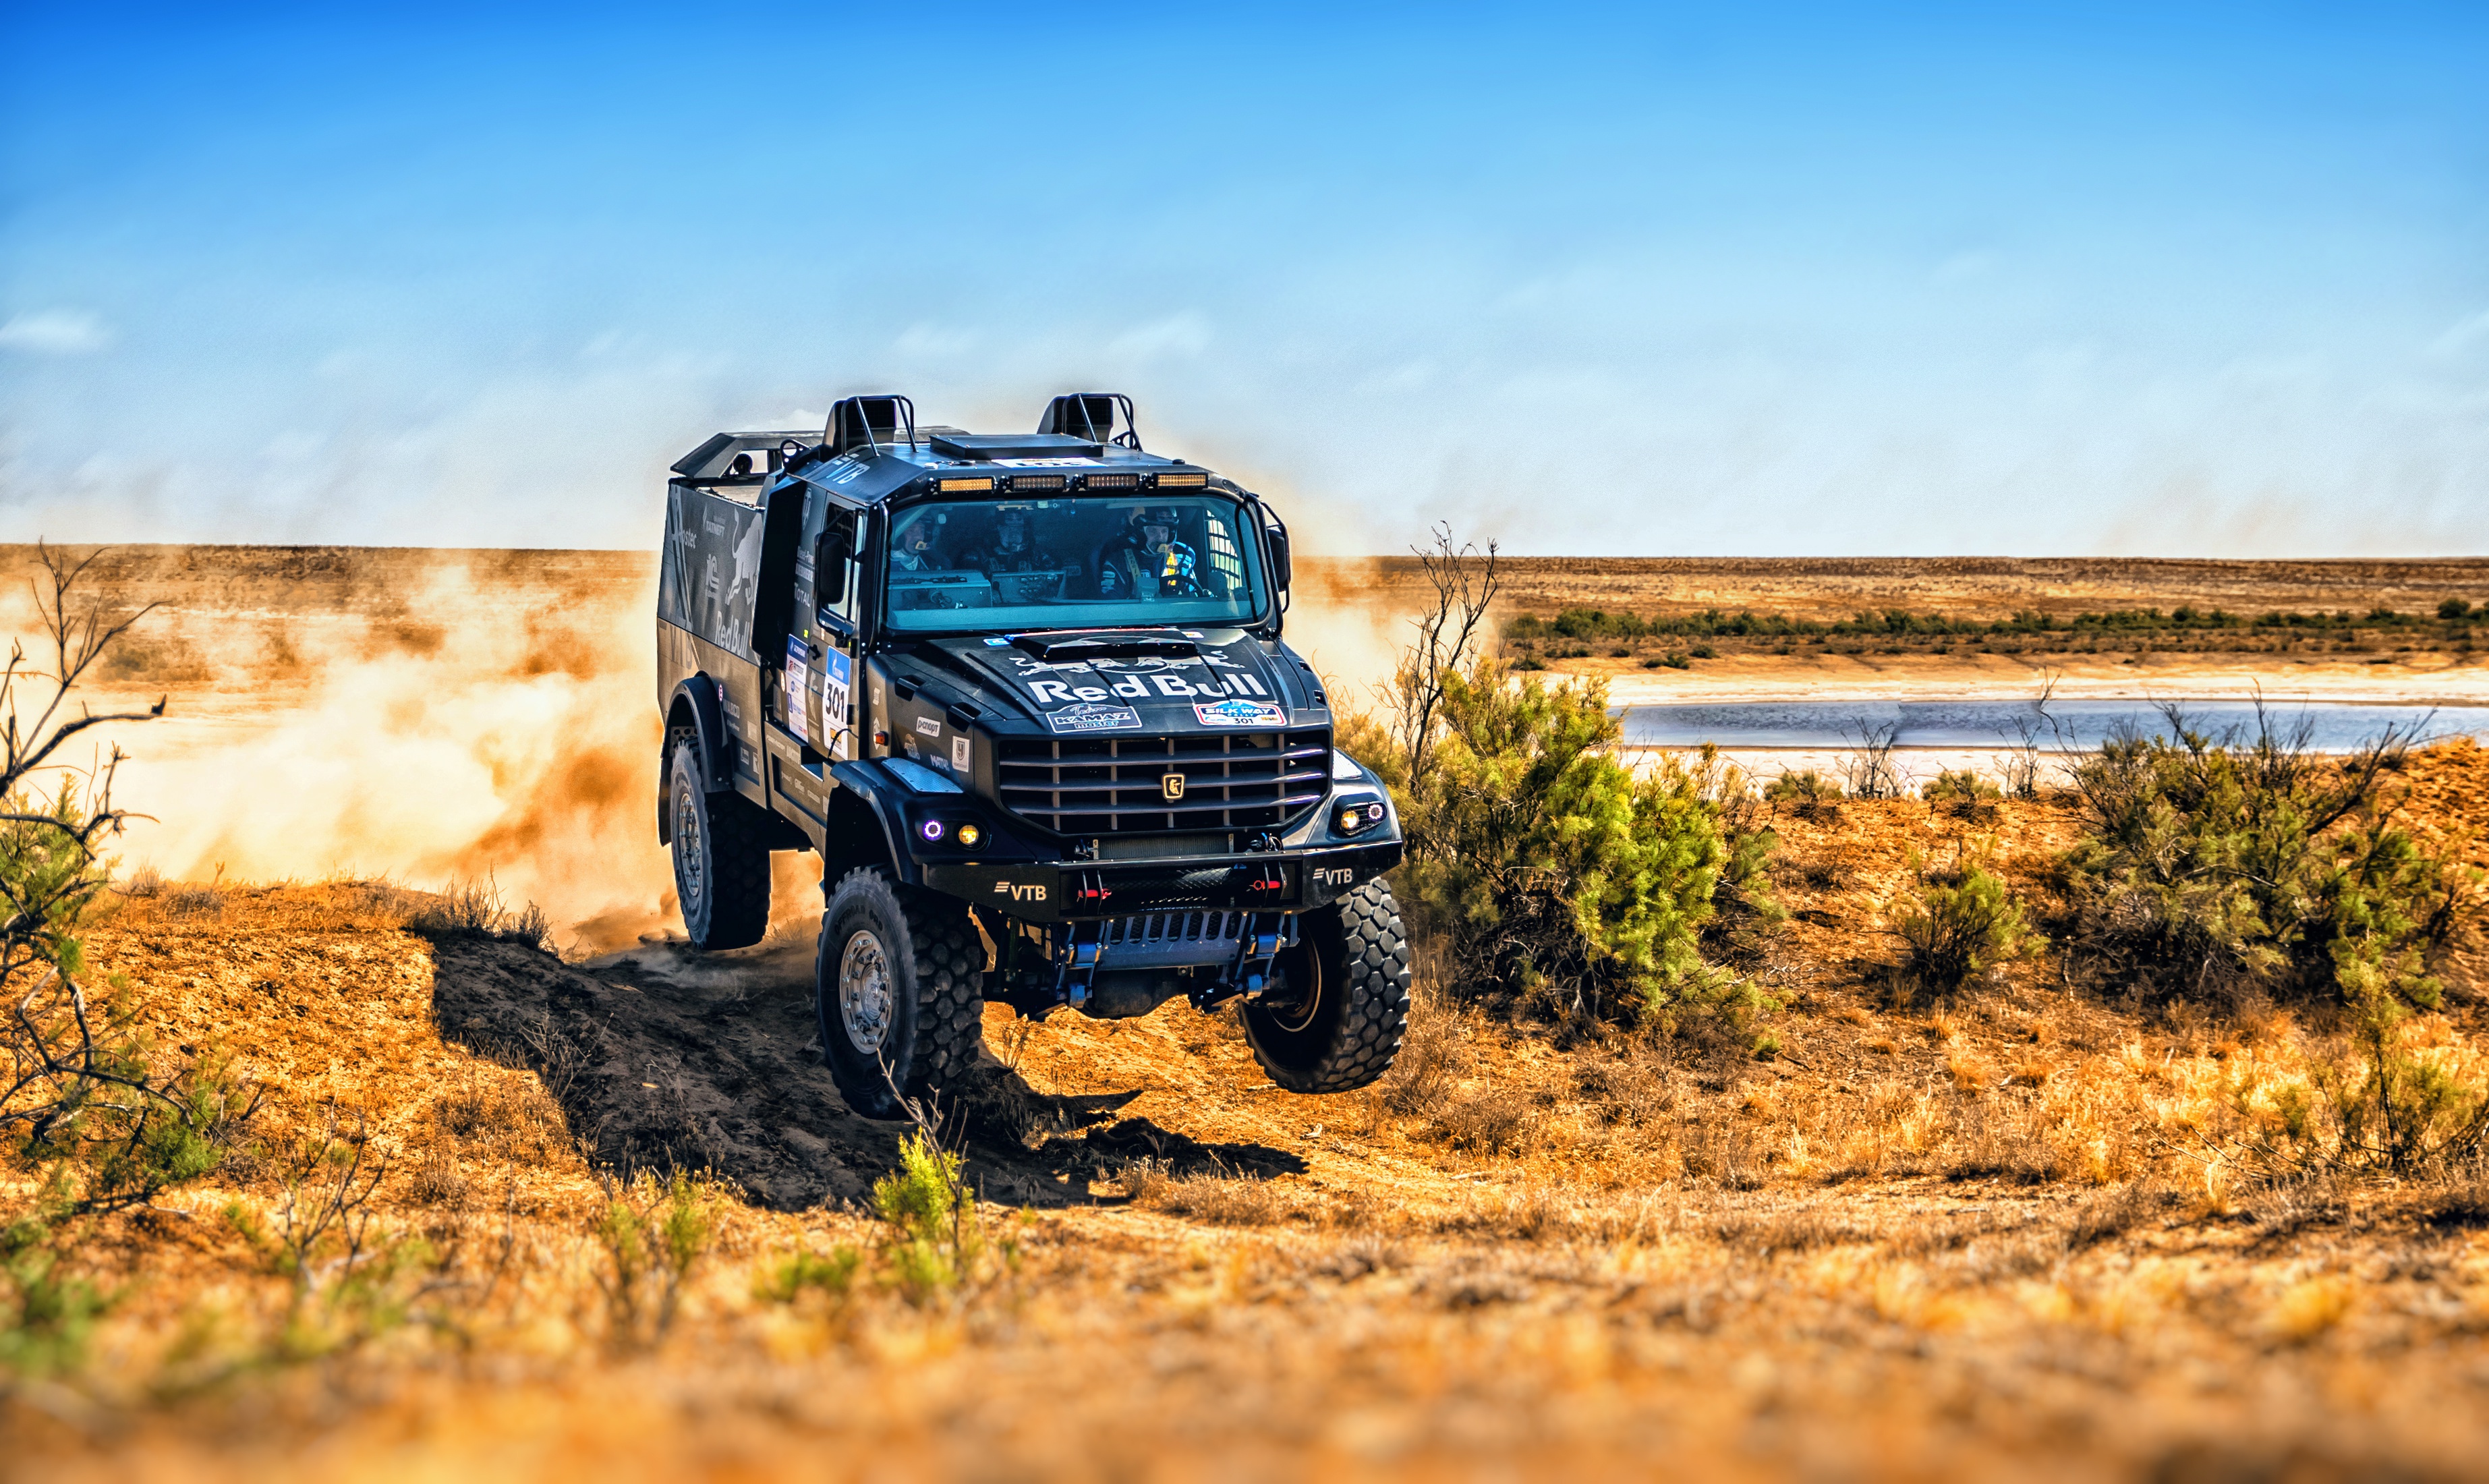 Desert Kamaz Rallye Red Bull Truck 3690x2200